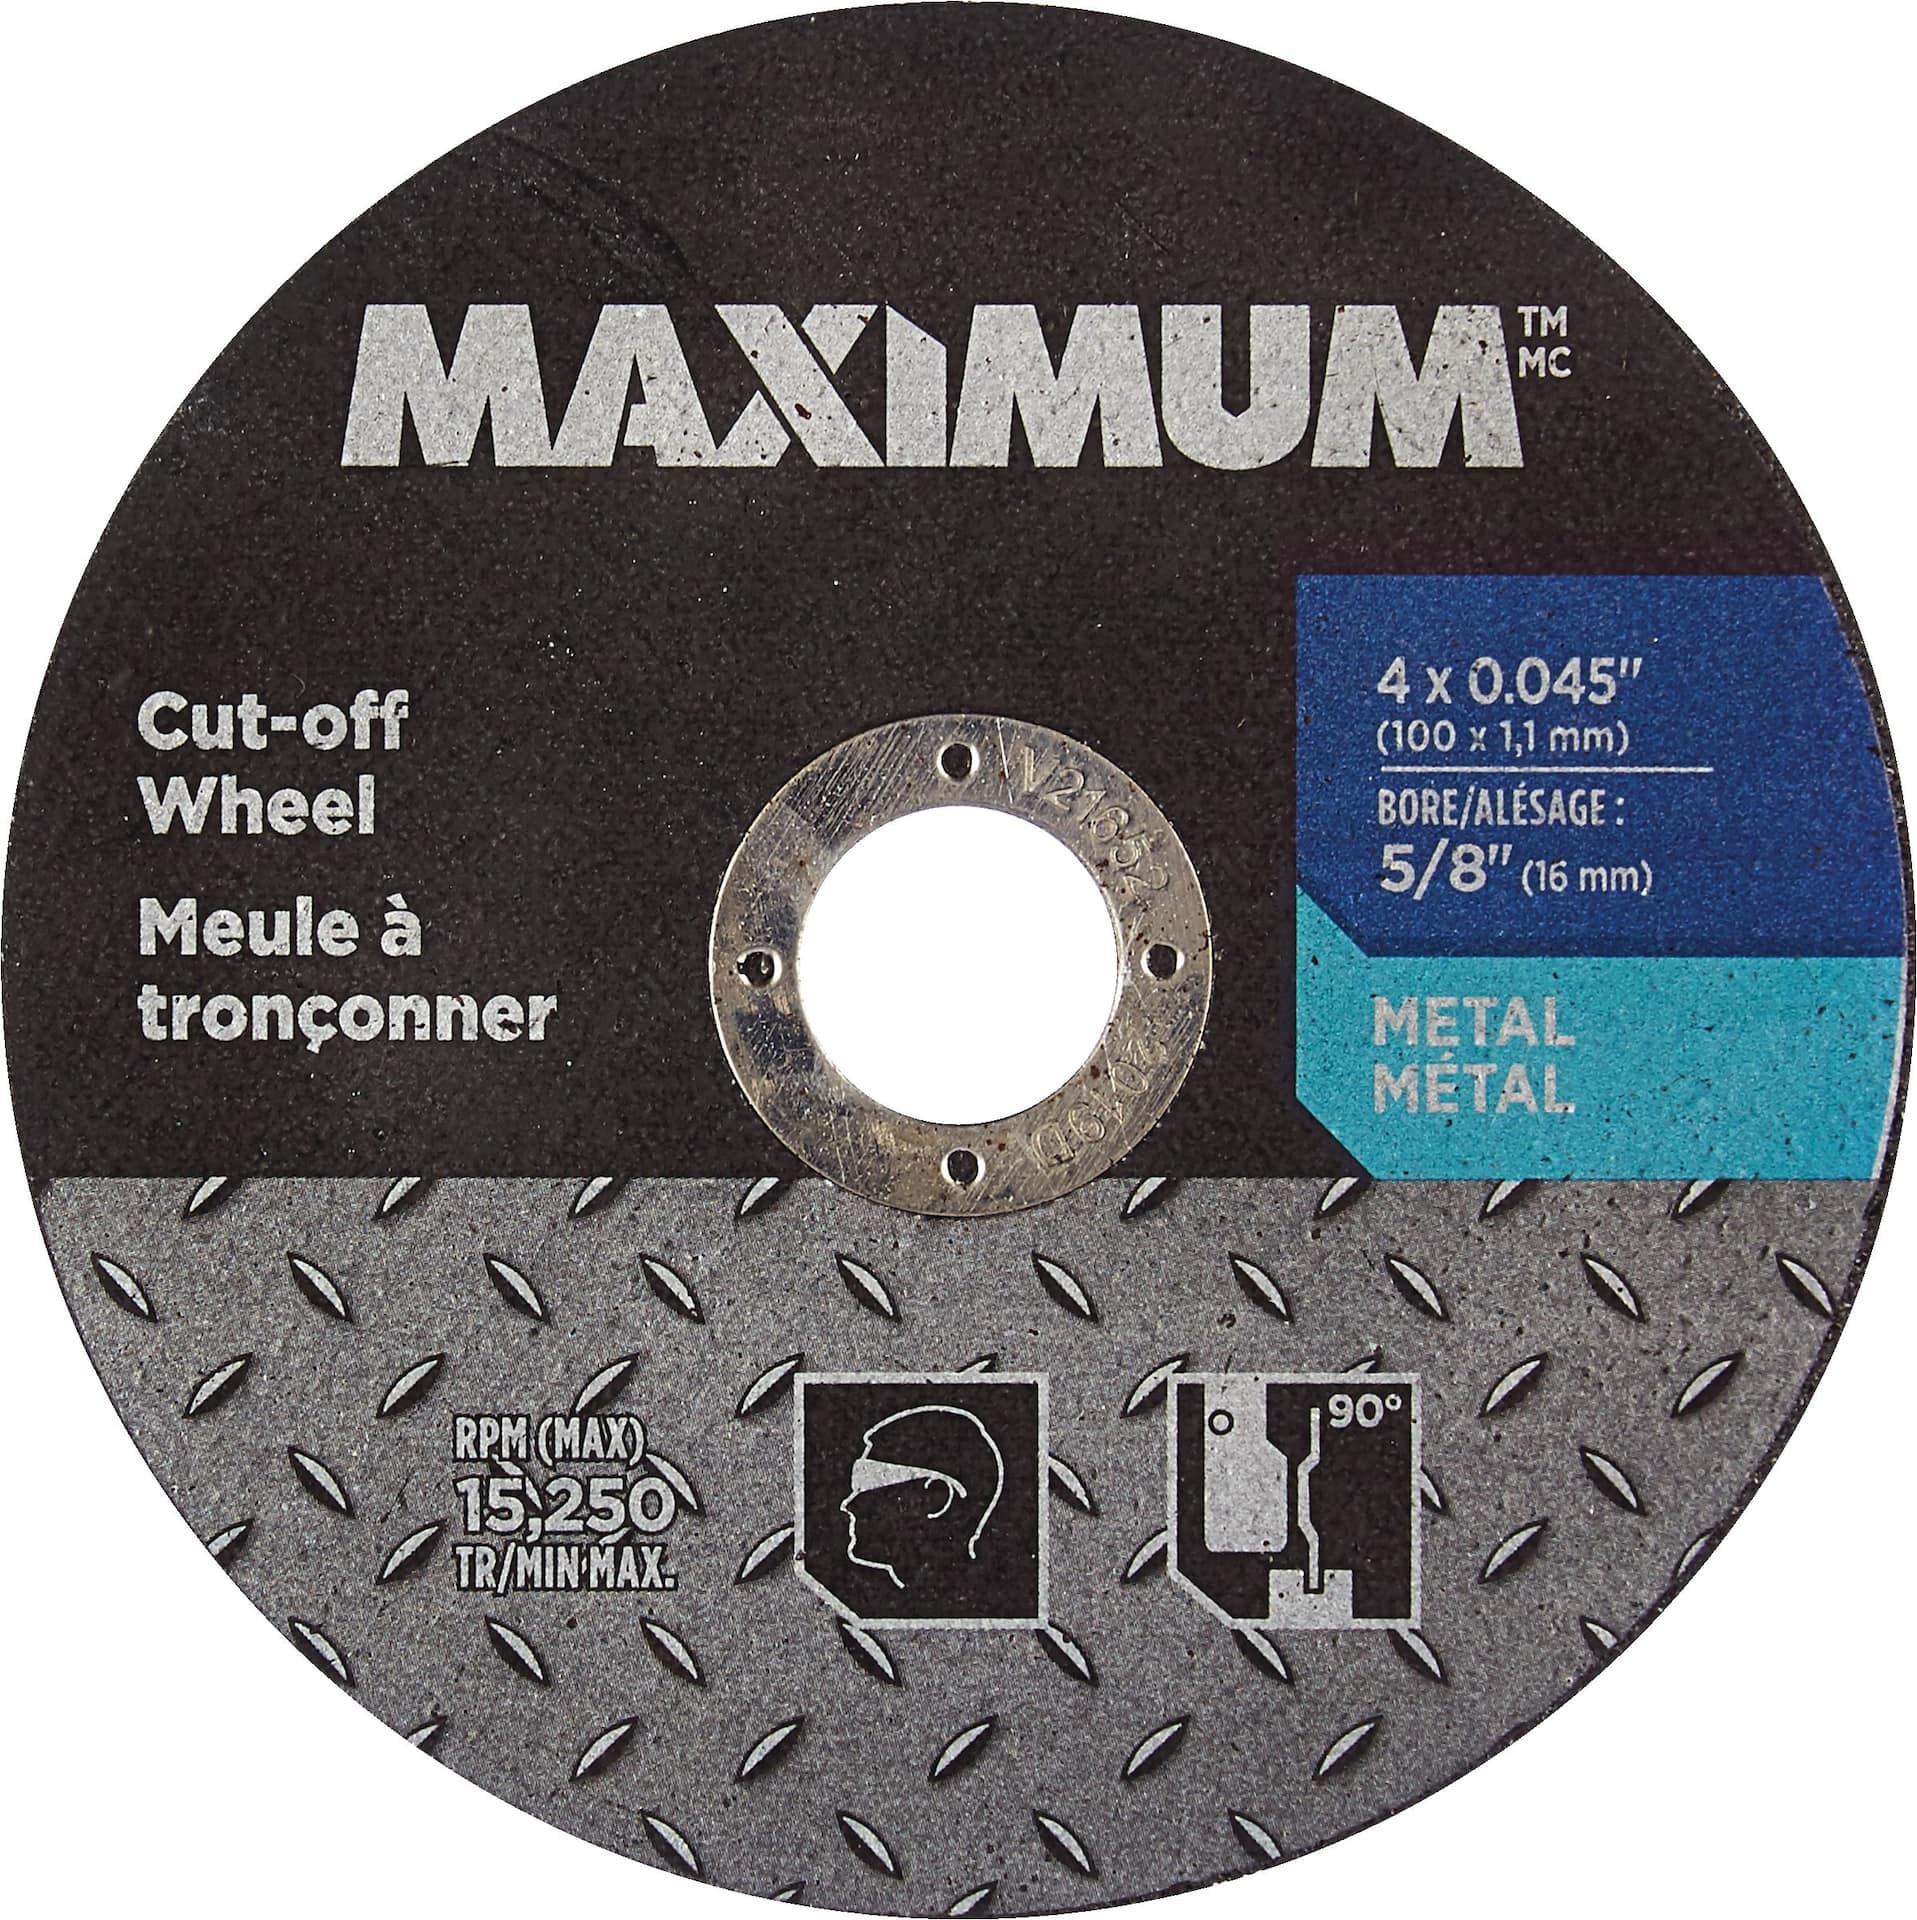 MAXIMUM Type 01 Aluminum Oxide Cut off Wheel for Metal